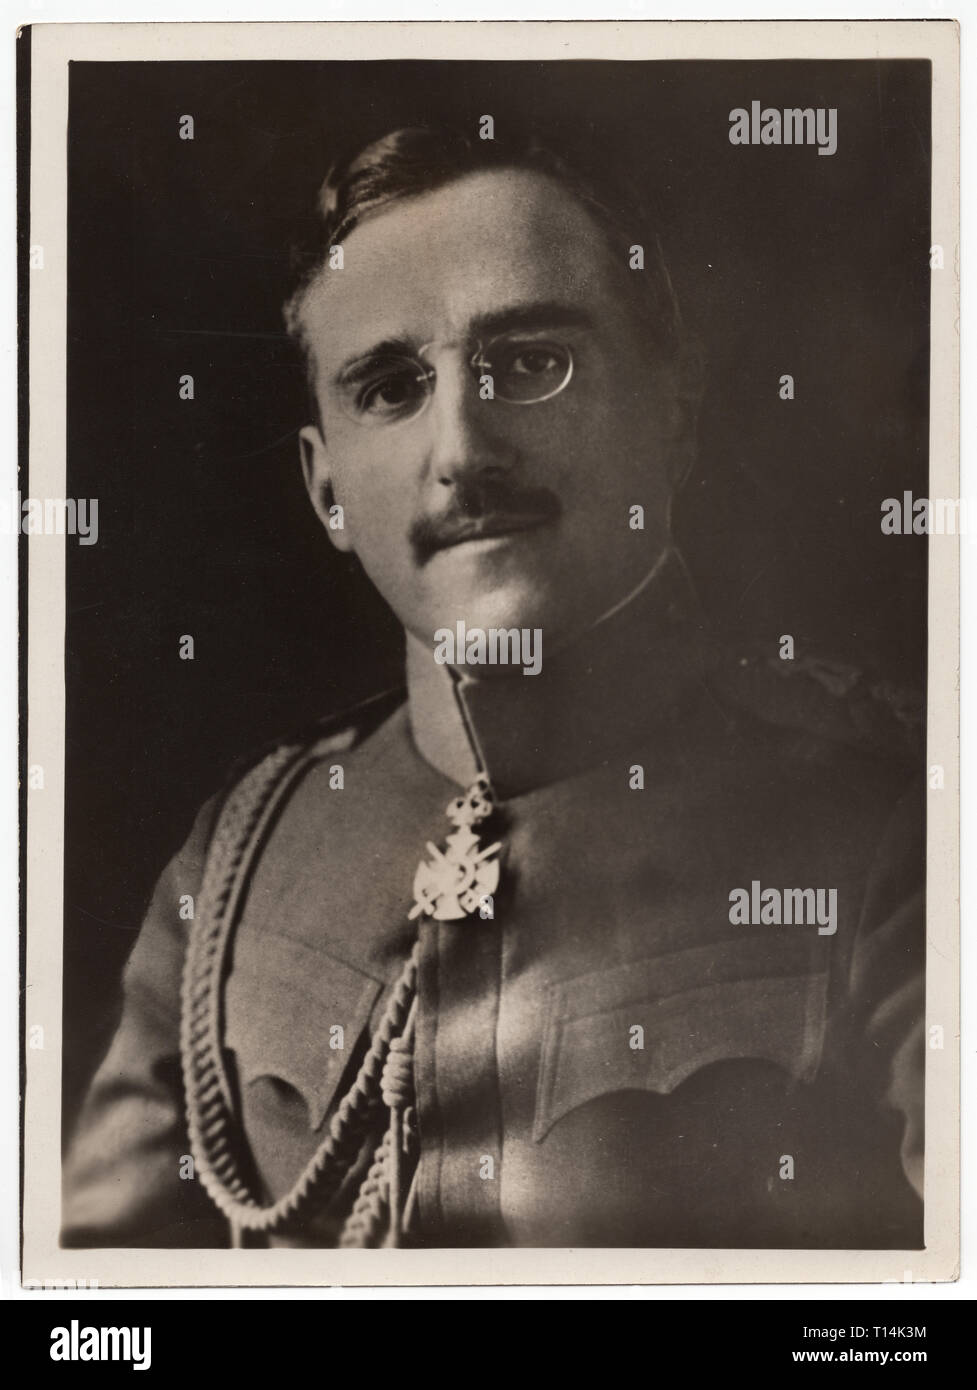 König Alexander I. von Jugoslawien (1888-1934) in der Undatierten Schwarz und Weiß vintage Foto von einem unbekannten Fotografen dargestellt. Mit freundlicher Genehmigung des Azoor Foto Sammlung. Stockfoto